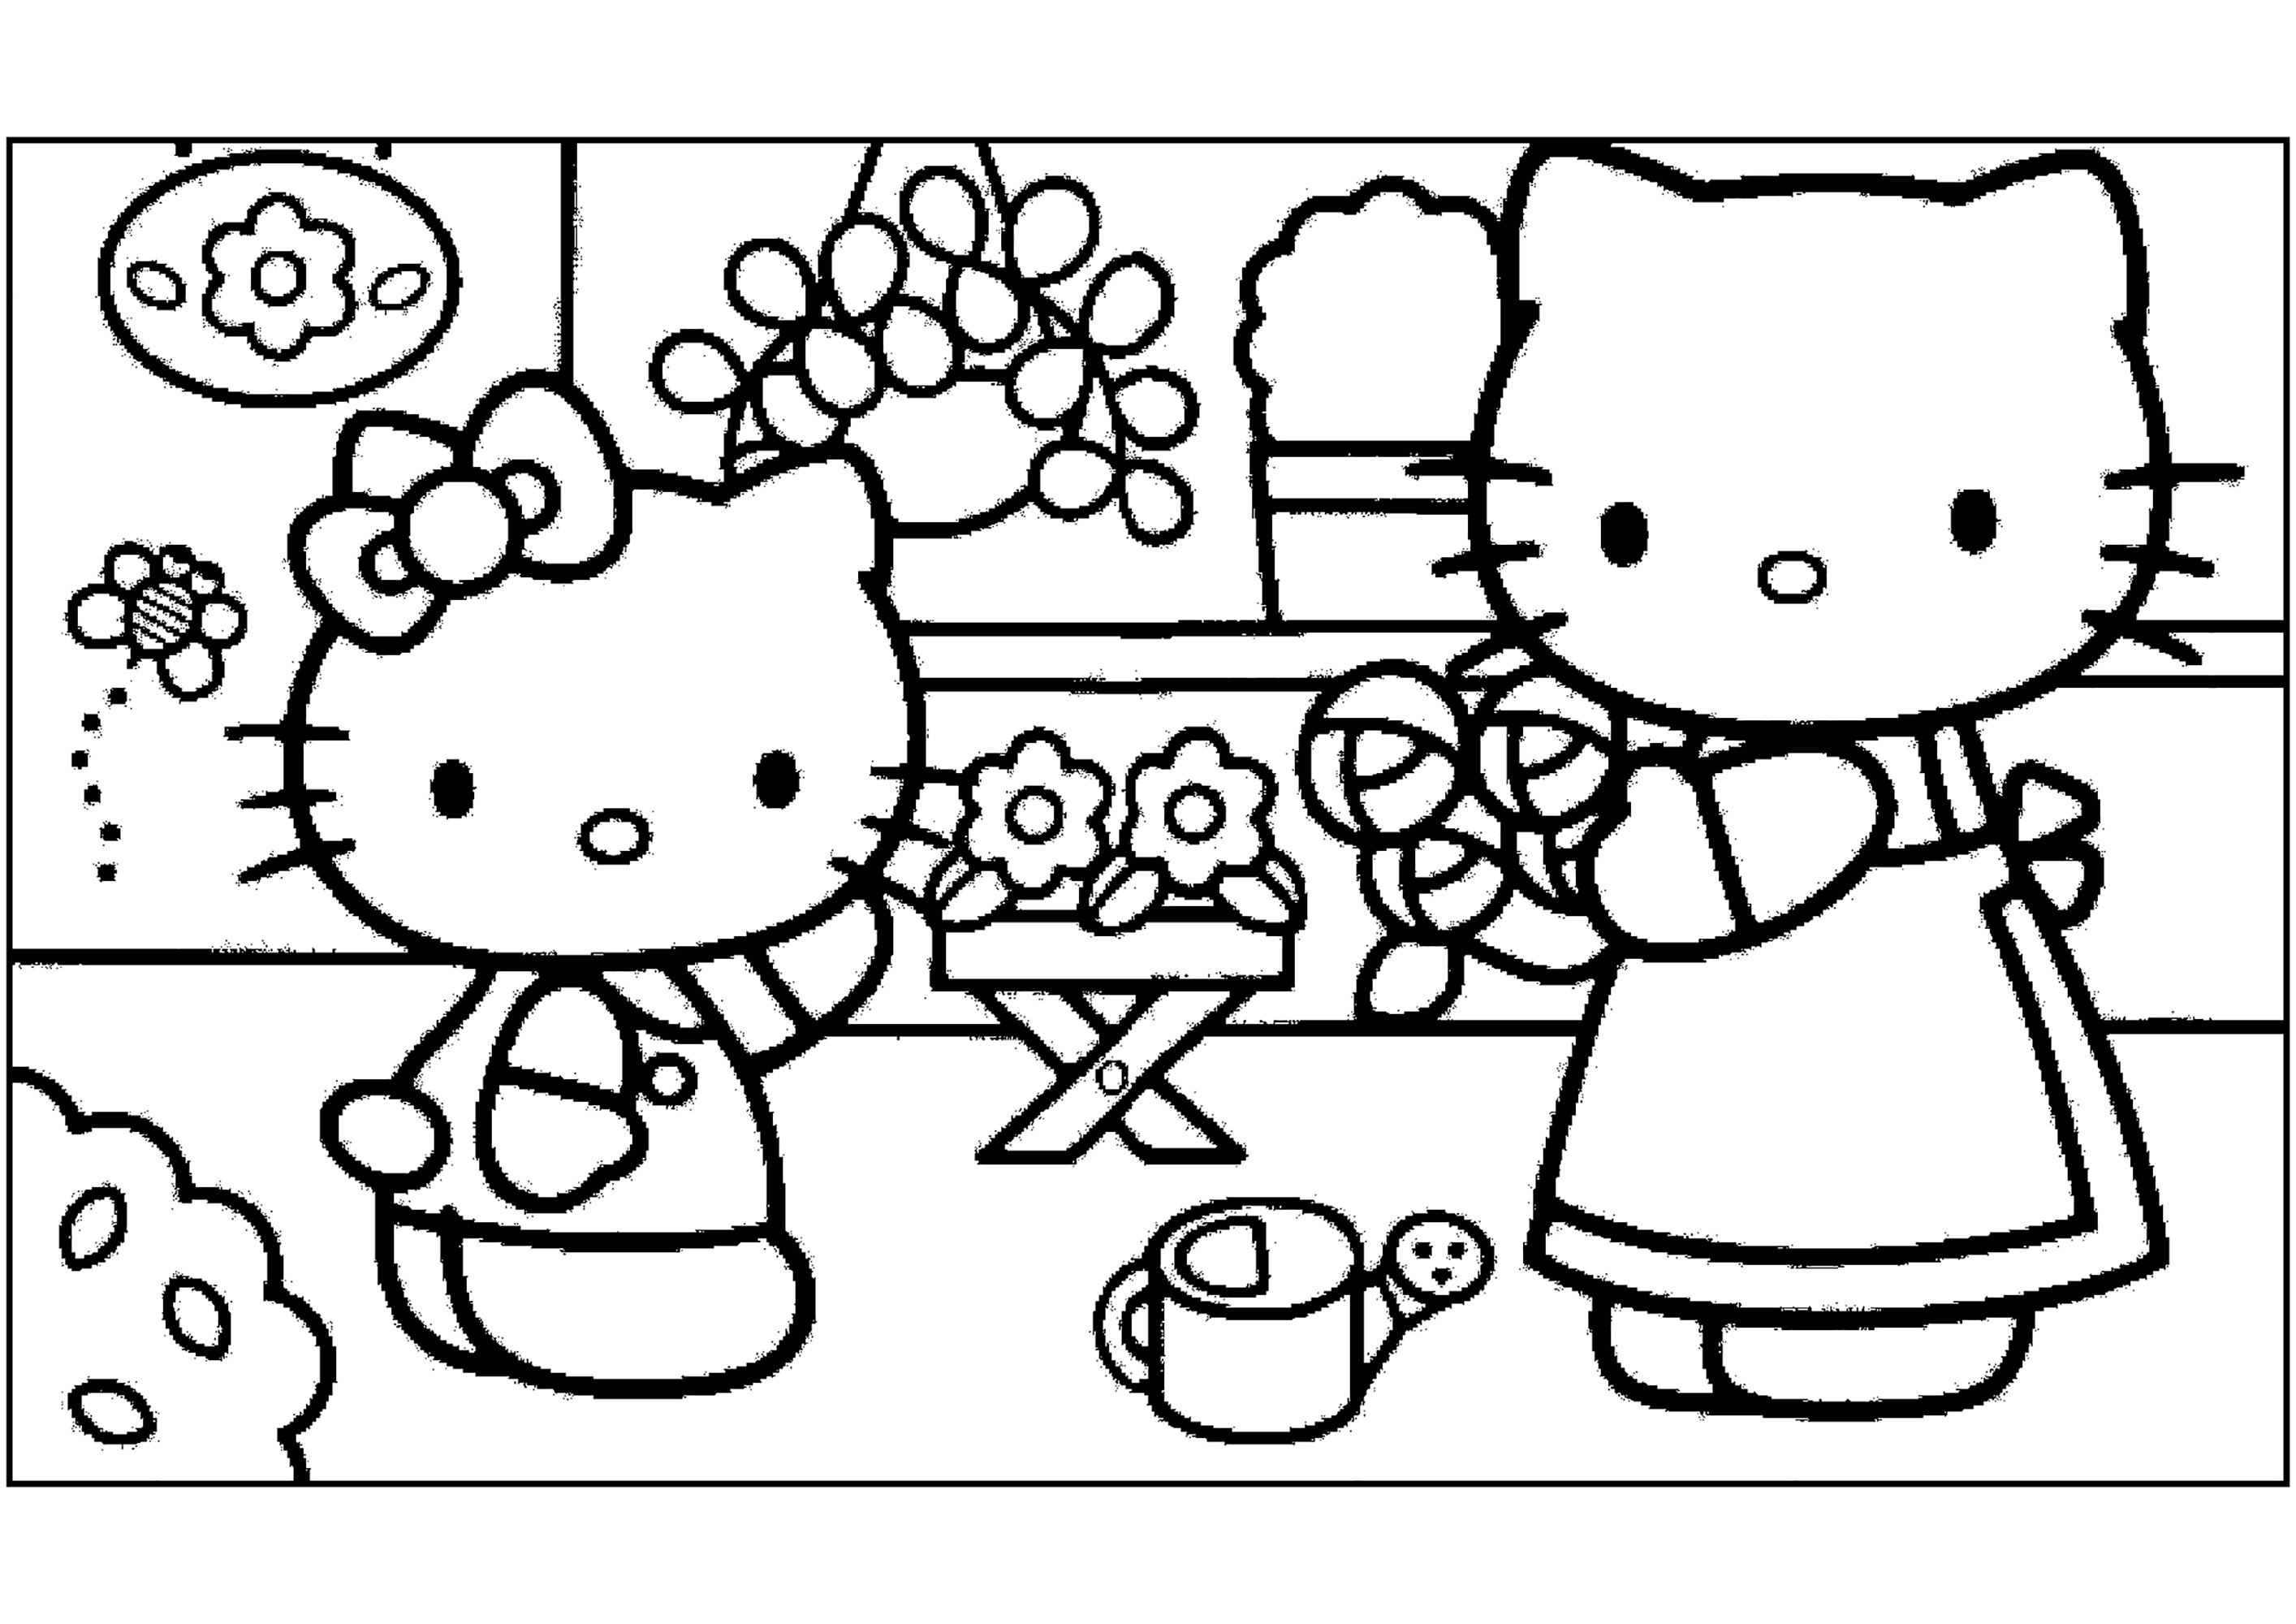 A Hello Kitty e a sua mãe fazem um ramo de flores